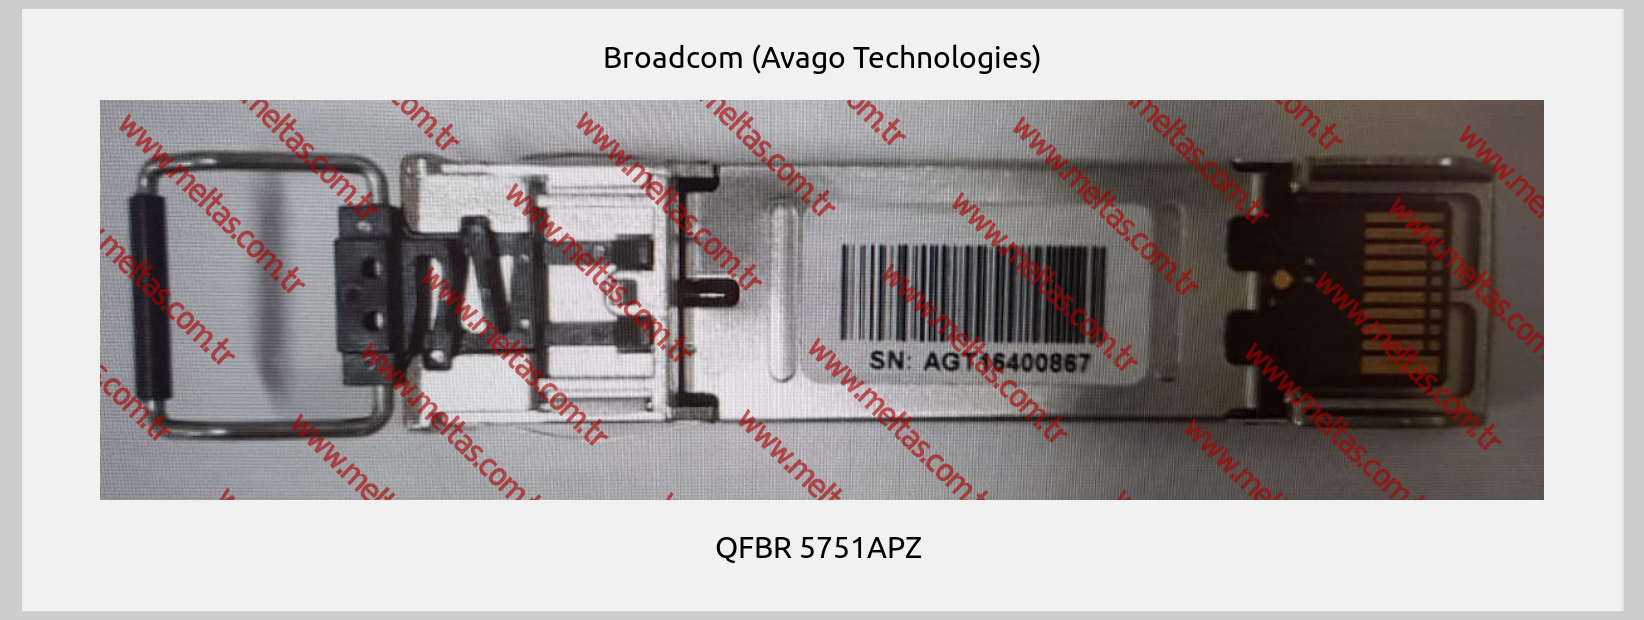 Broadcom (Avago Technologies) - QFBR 5751APZ 